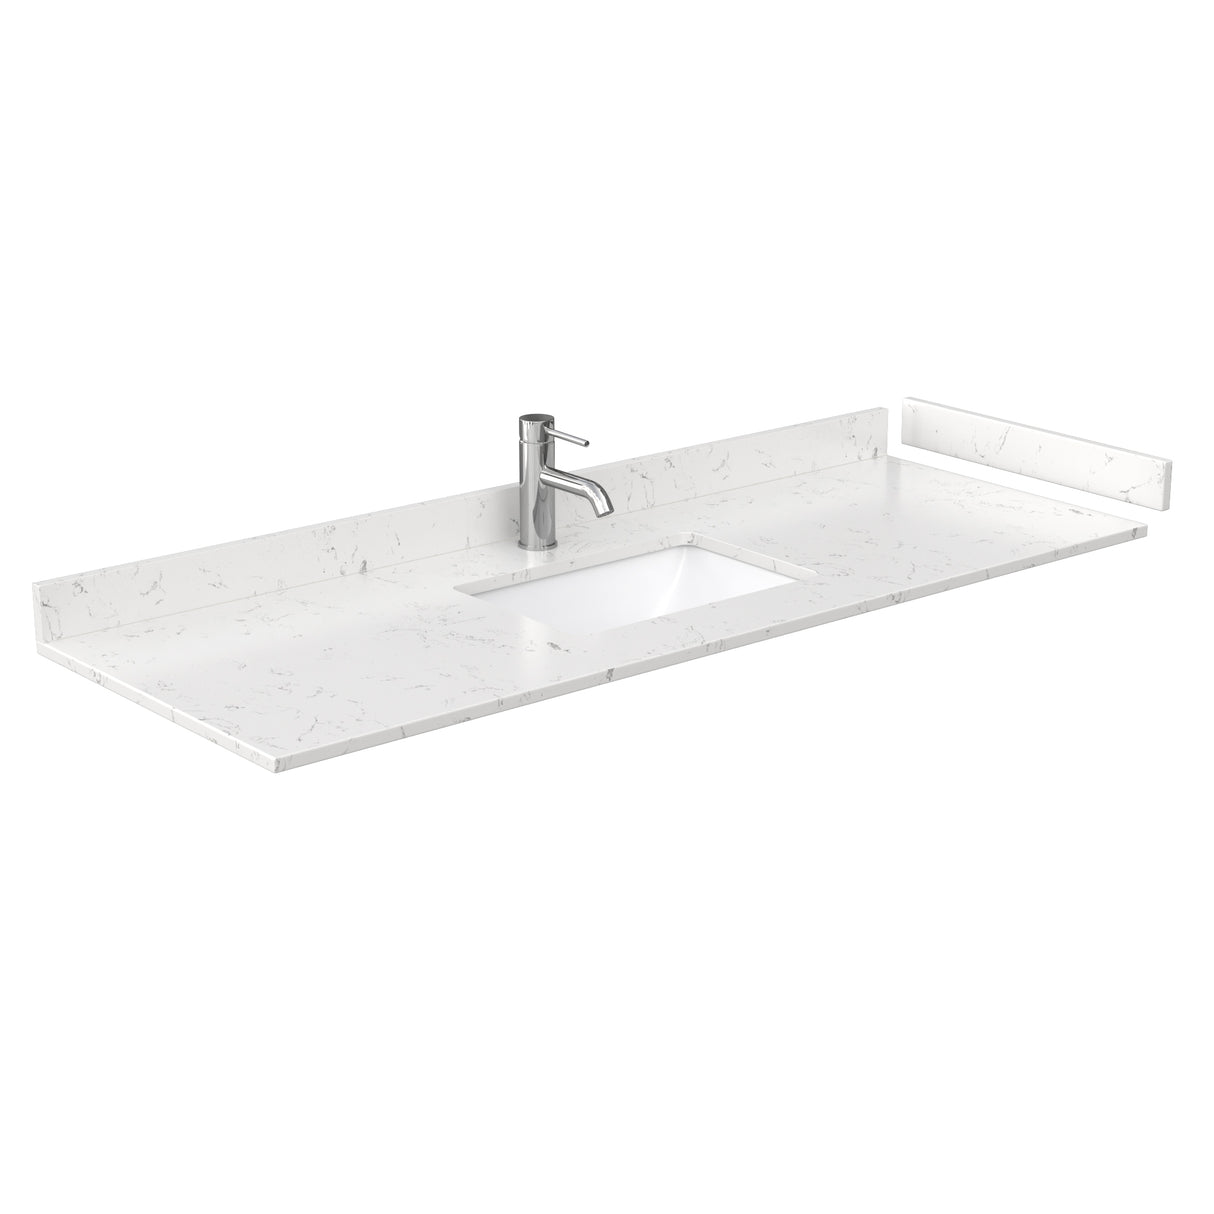 Daria 60 Inch Single Bathroom Vanity in Dark Gray Carrara Cultured Marble Countertop Undermount Square Sink No Mirror